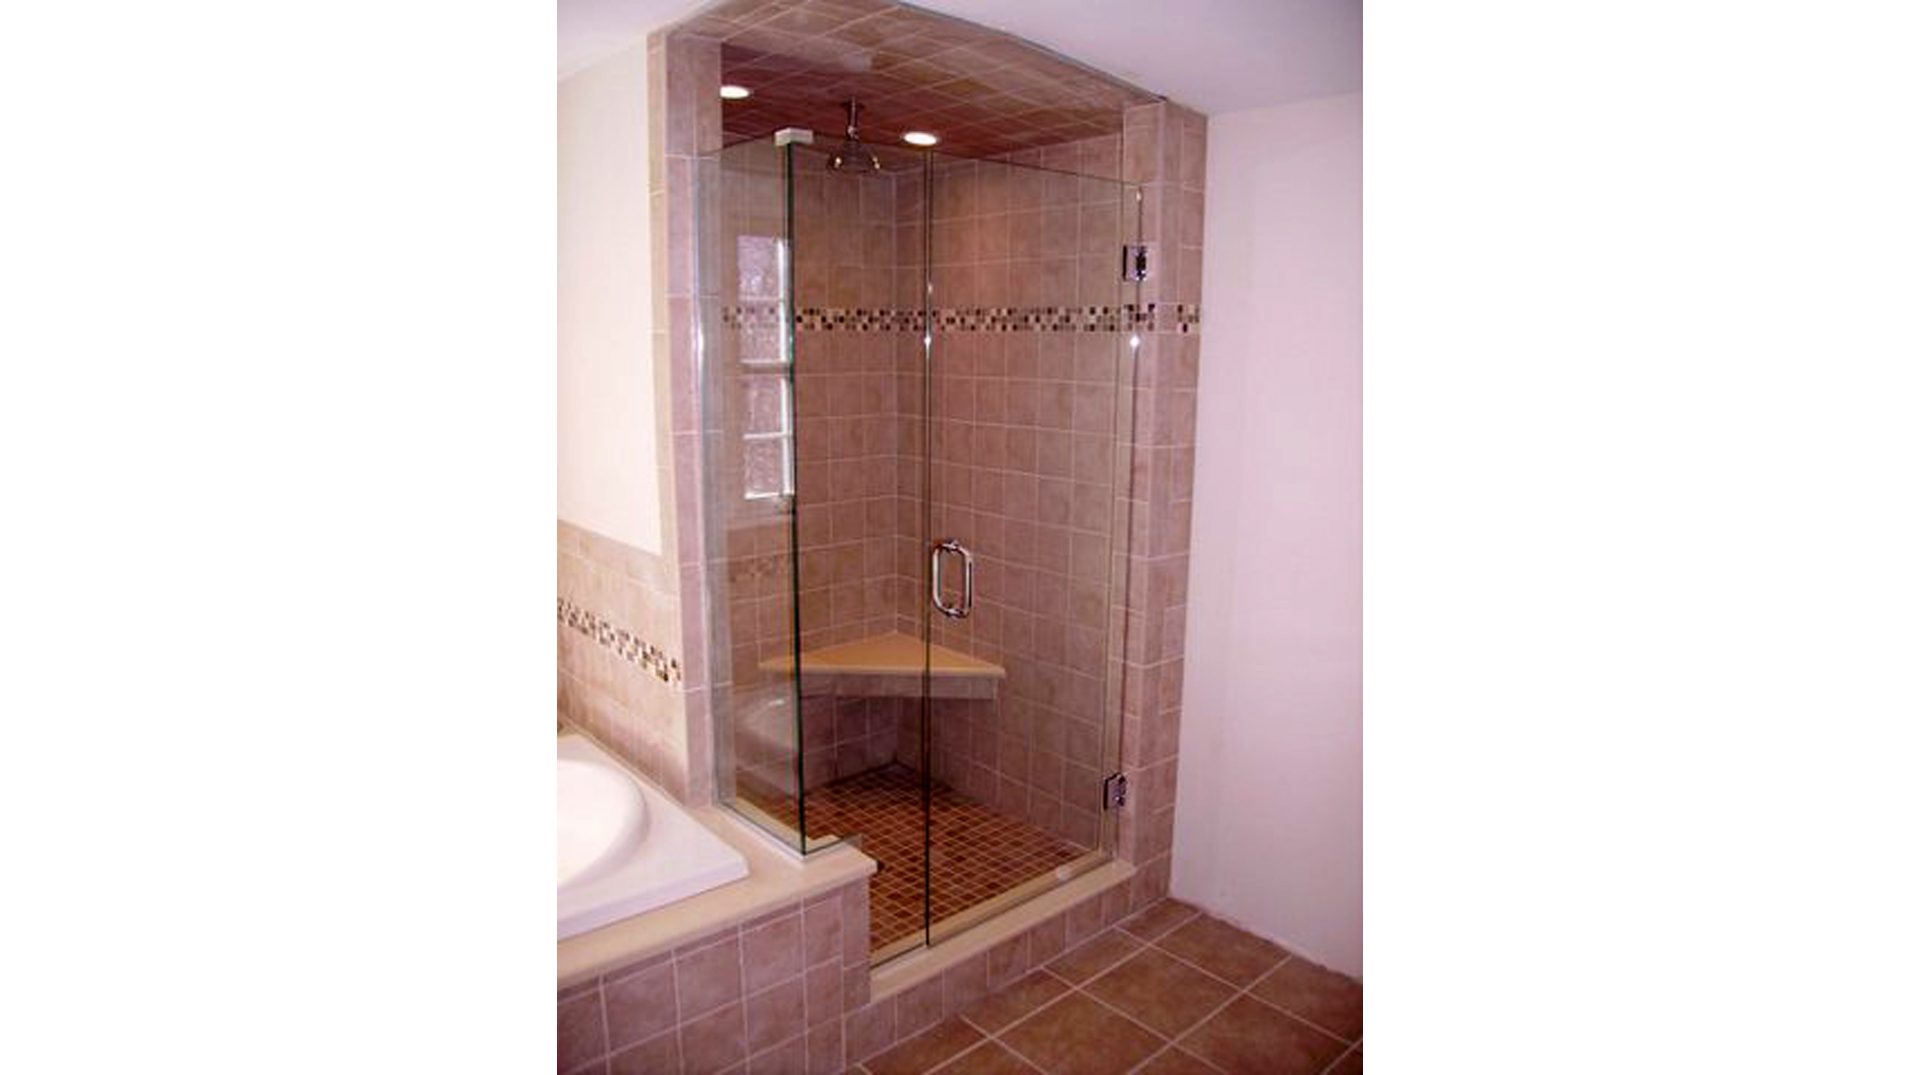 frameless shower doors